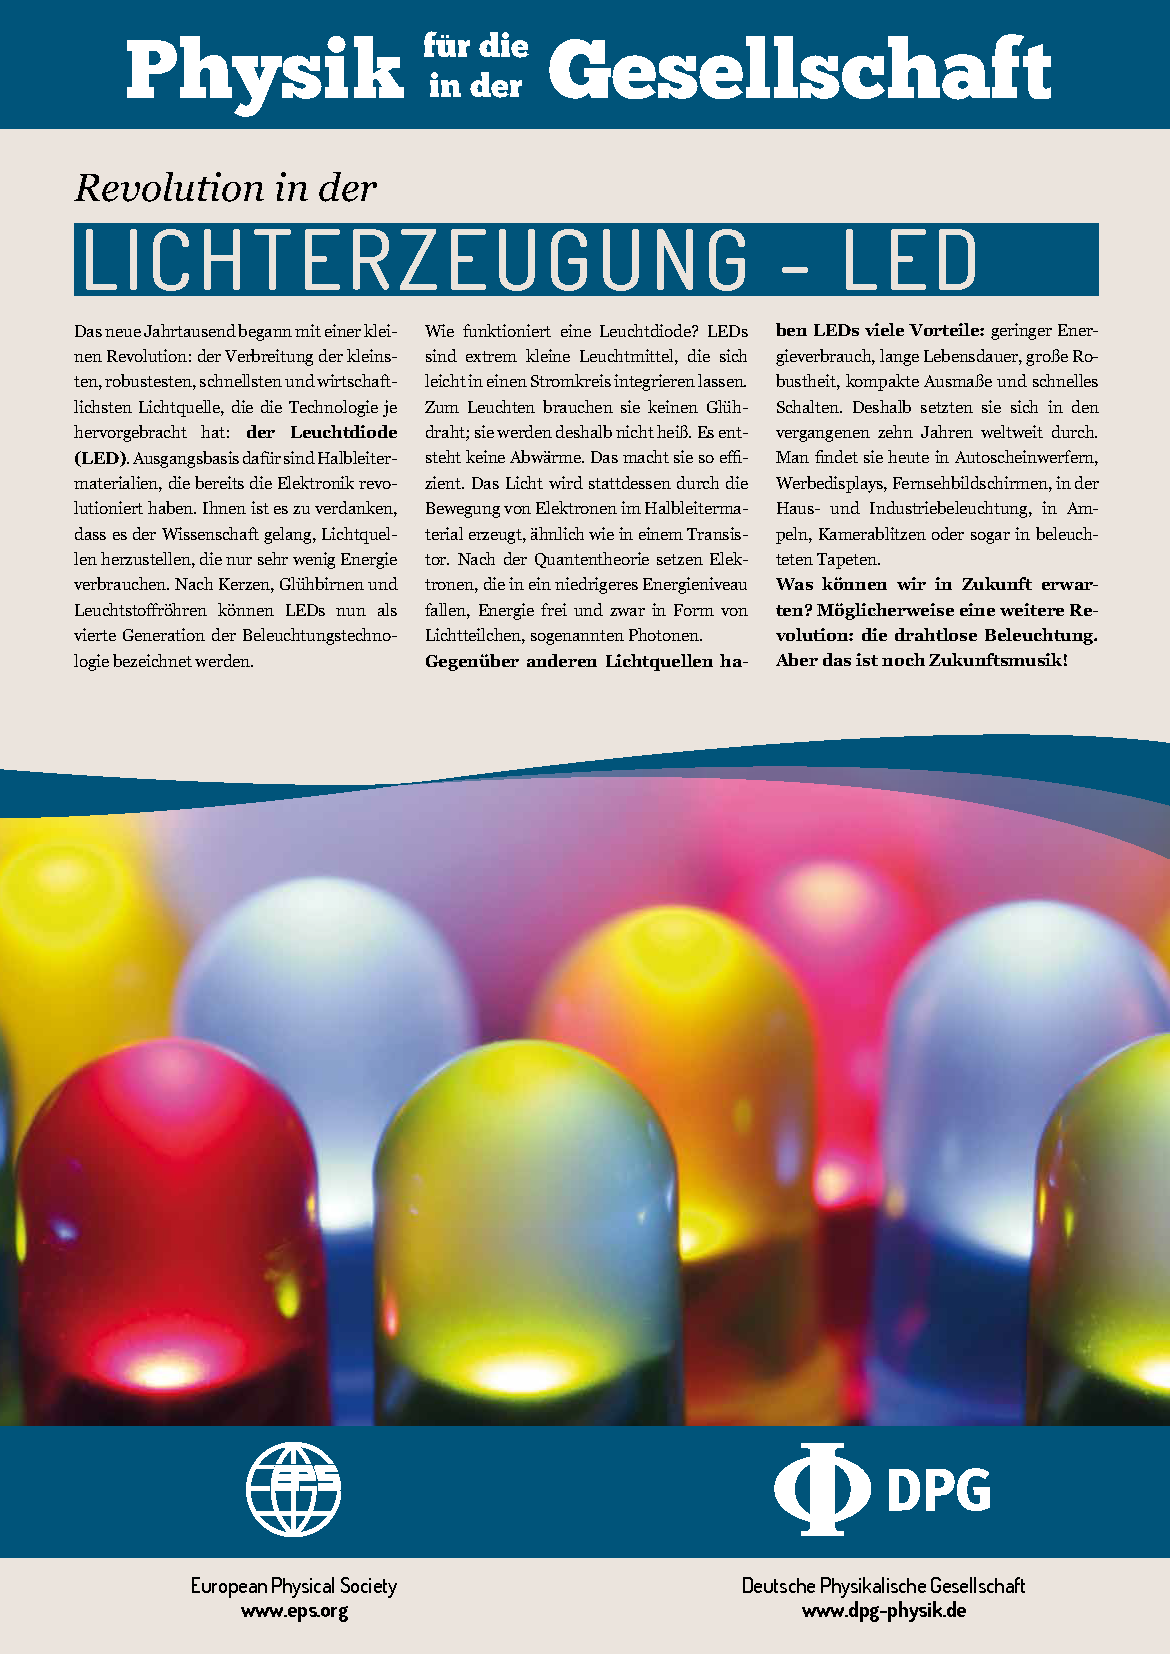 Revolution in der Lichterzeugung - LED — DPG